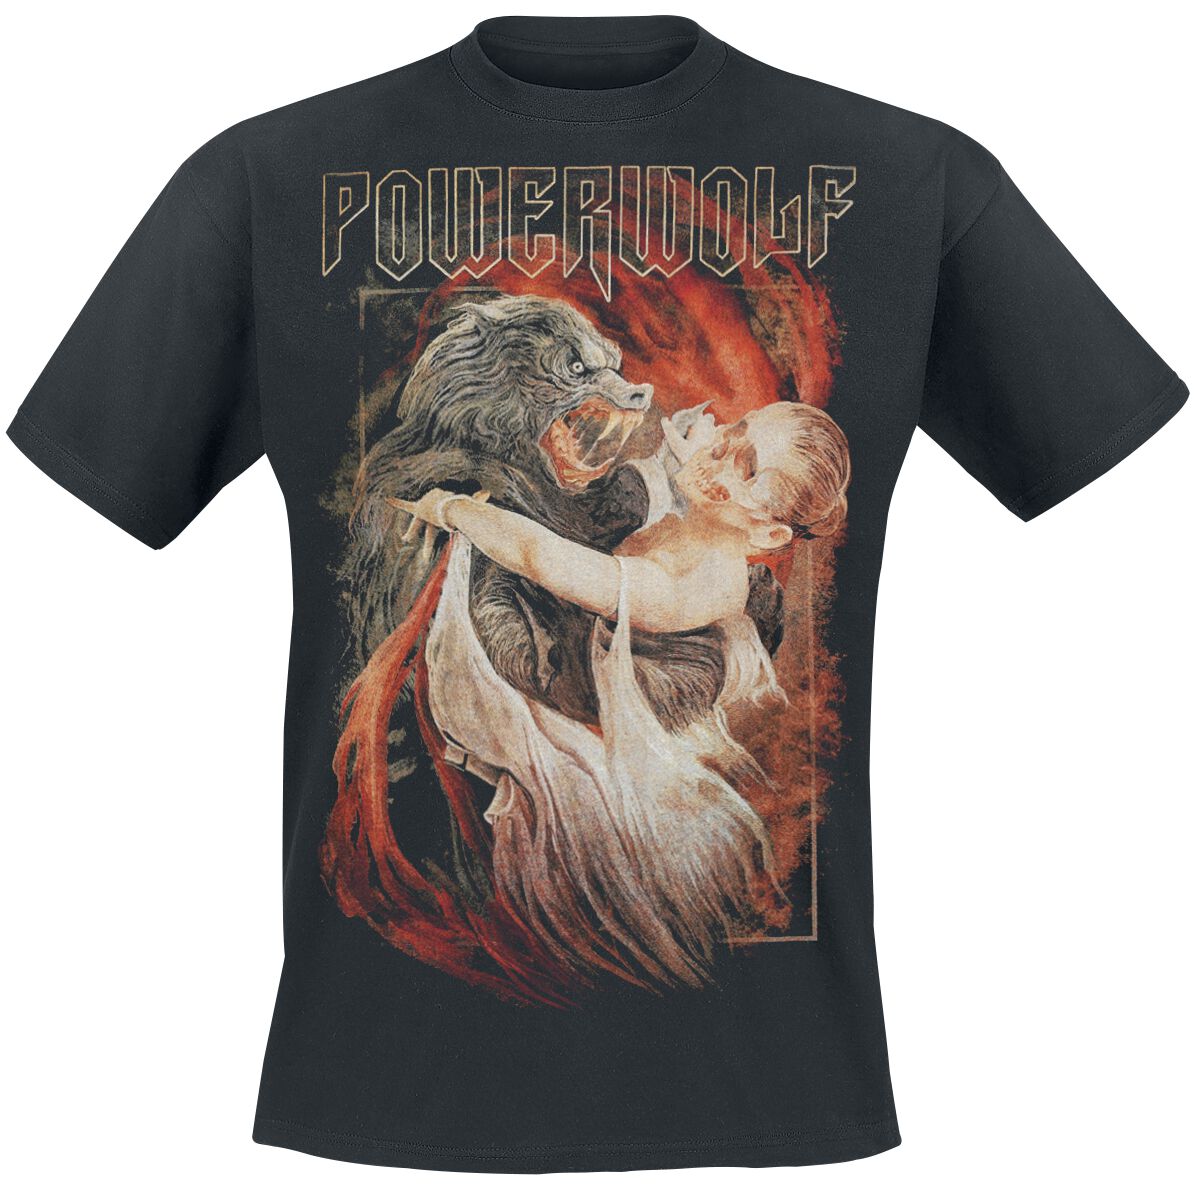 Powerwolf T-Shirt - Dancing With The Dead - S bis 3XL - für Männer - Größe XL - schwarz  - Lizenziertes Merchandise!